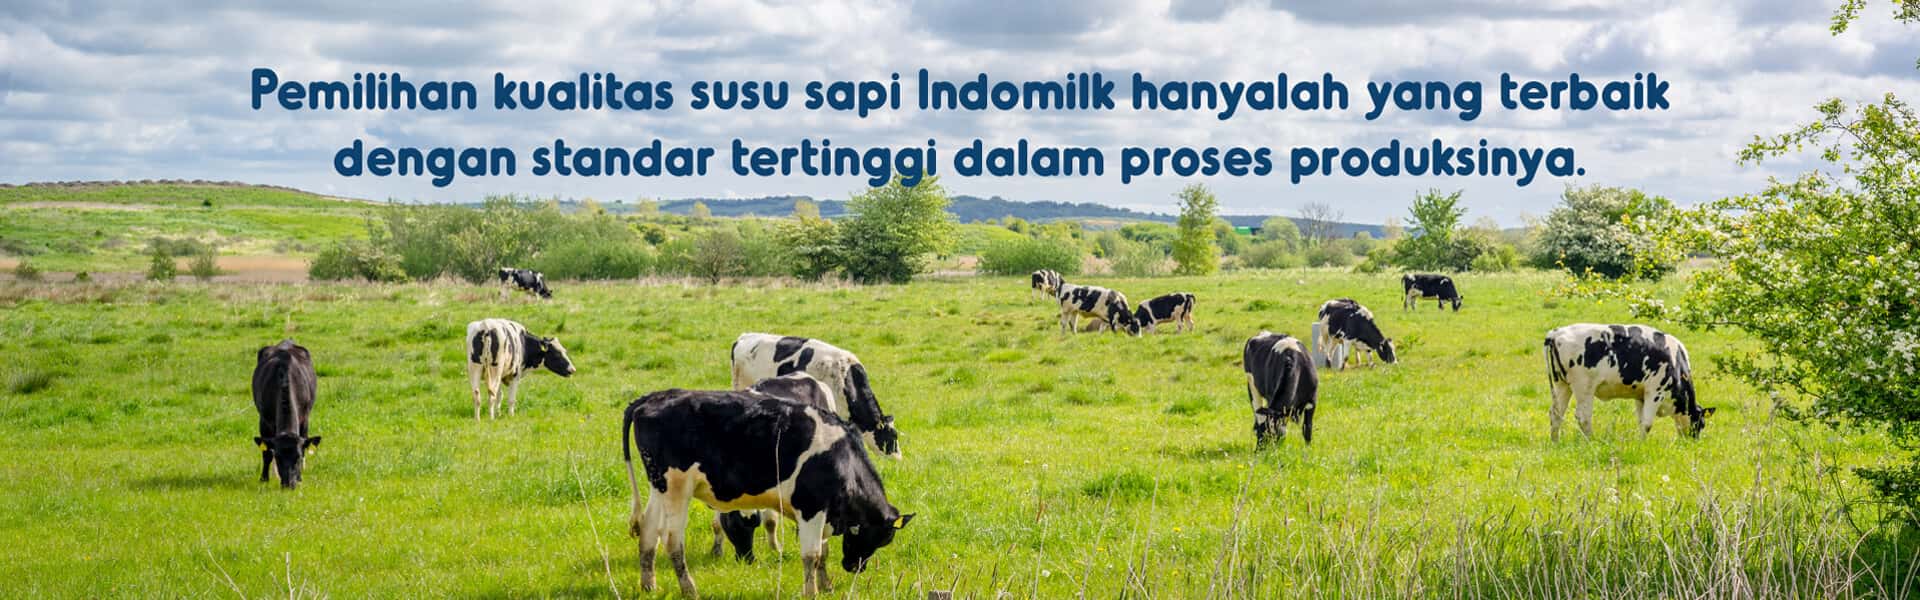 Pemilihan kualitas susu sapi Indomilk hanyalah yang terbaik dengan standar tertinggi dalam proses produksinya.